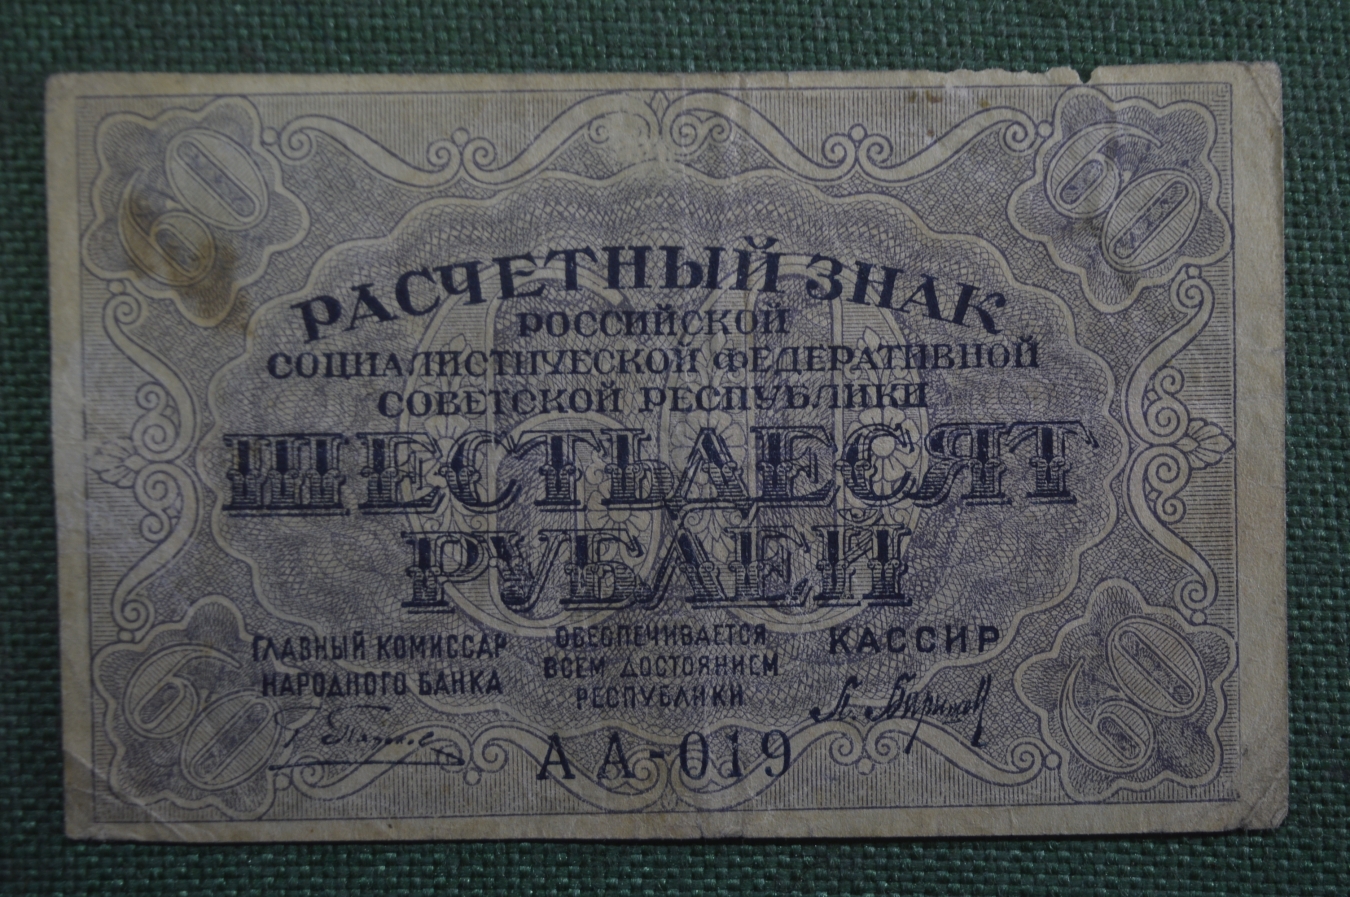 60 купюр. 60 Рублей 1919 года. Банкноты 1919 года. Расчетный знак 60 рублей. Купюра 60 рублей.